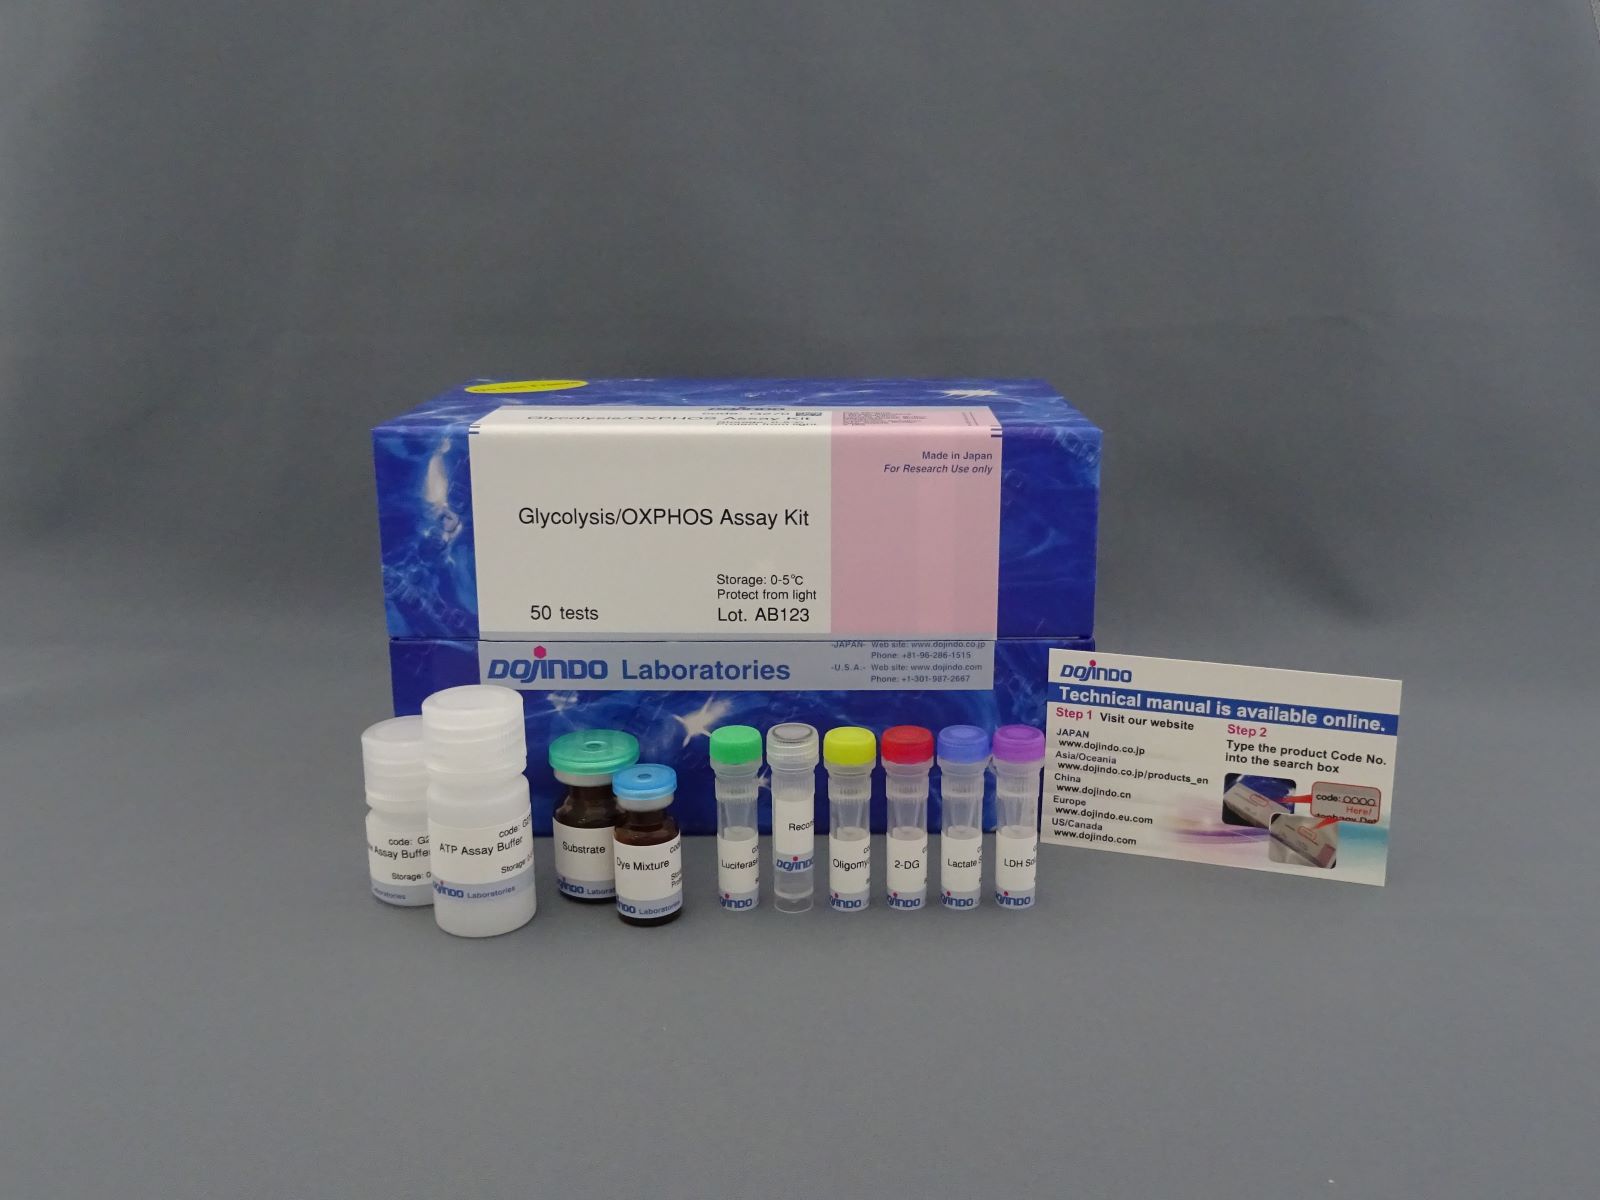 糖酵解/氧化磷酸化检测试剂盒—Glycolysis/OXPHOS Assay Kit货号：G270